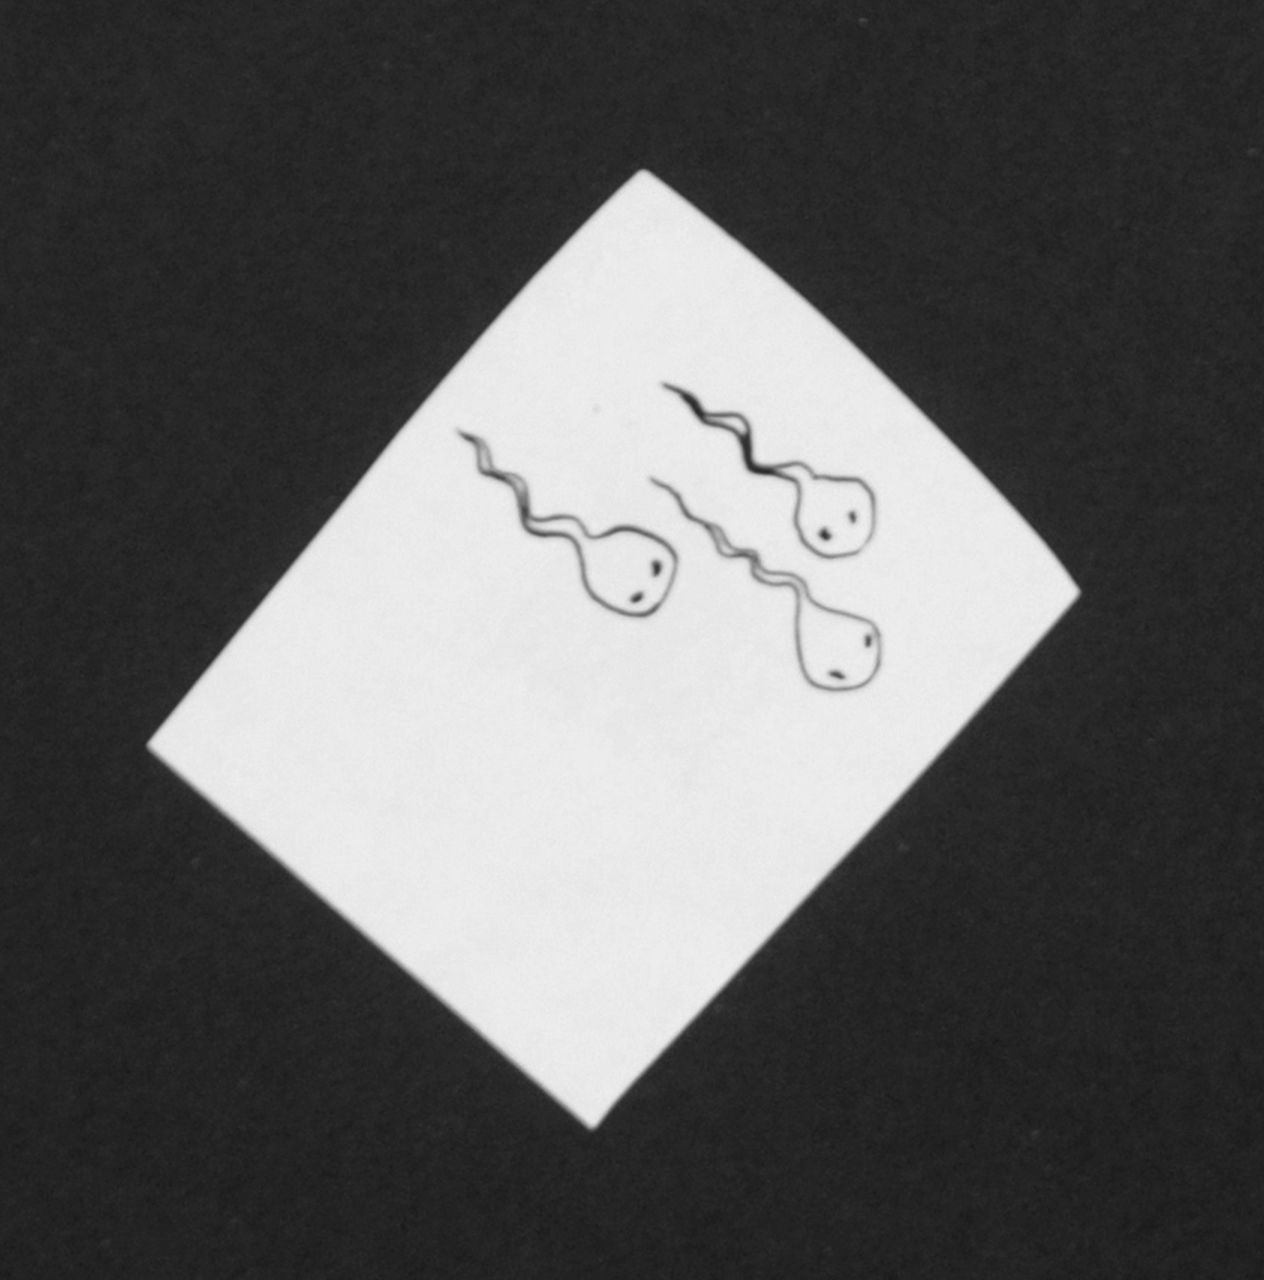 Oranje-Nassau (Prinses Beatrix) B.W.A. van | Beatrix Wilhelmina Armgard van Oranje-Nassau (Prinses Beatrix), Three tadpoles, Bleistift und Ausziehtusche auf Papier 5,2 x 4,1 cm, executed August 1960